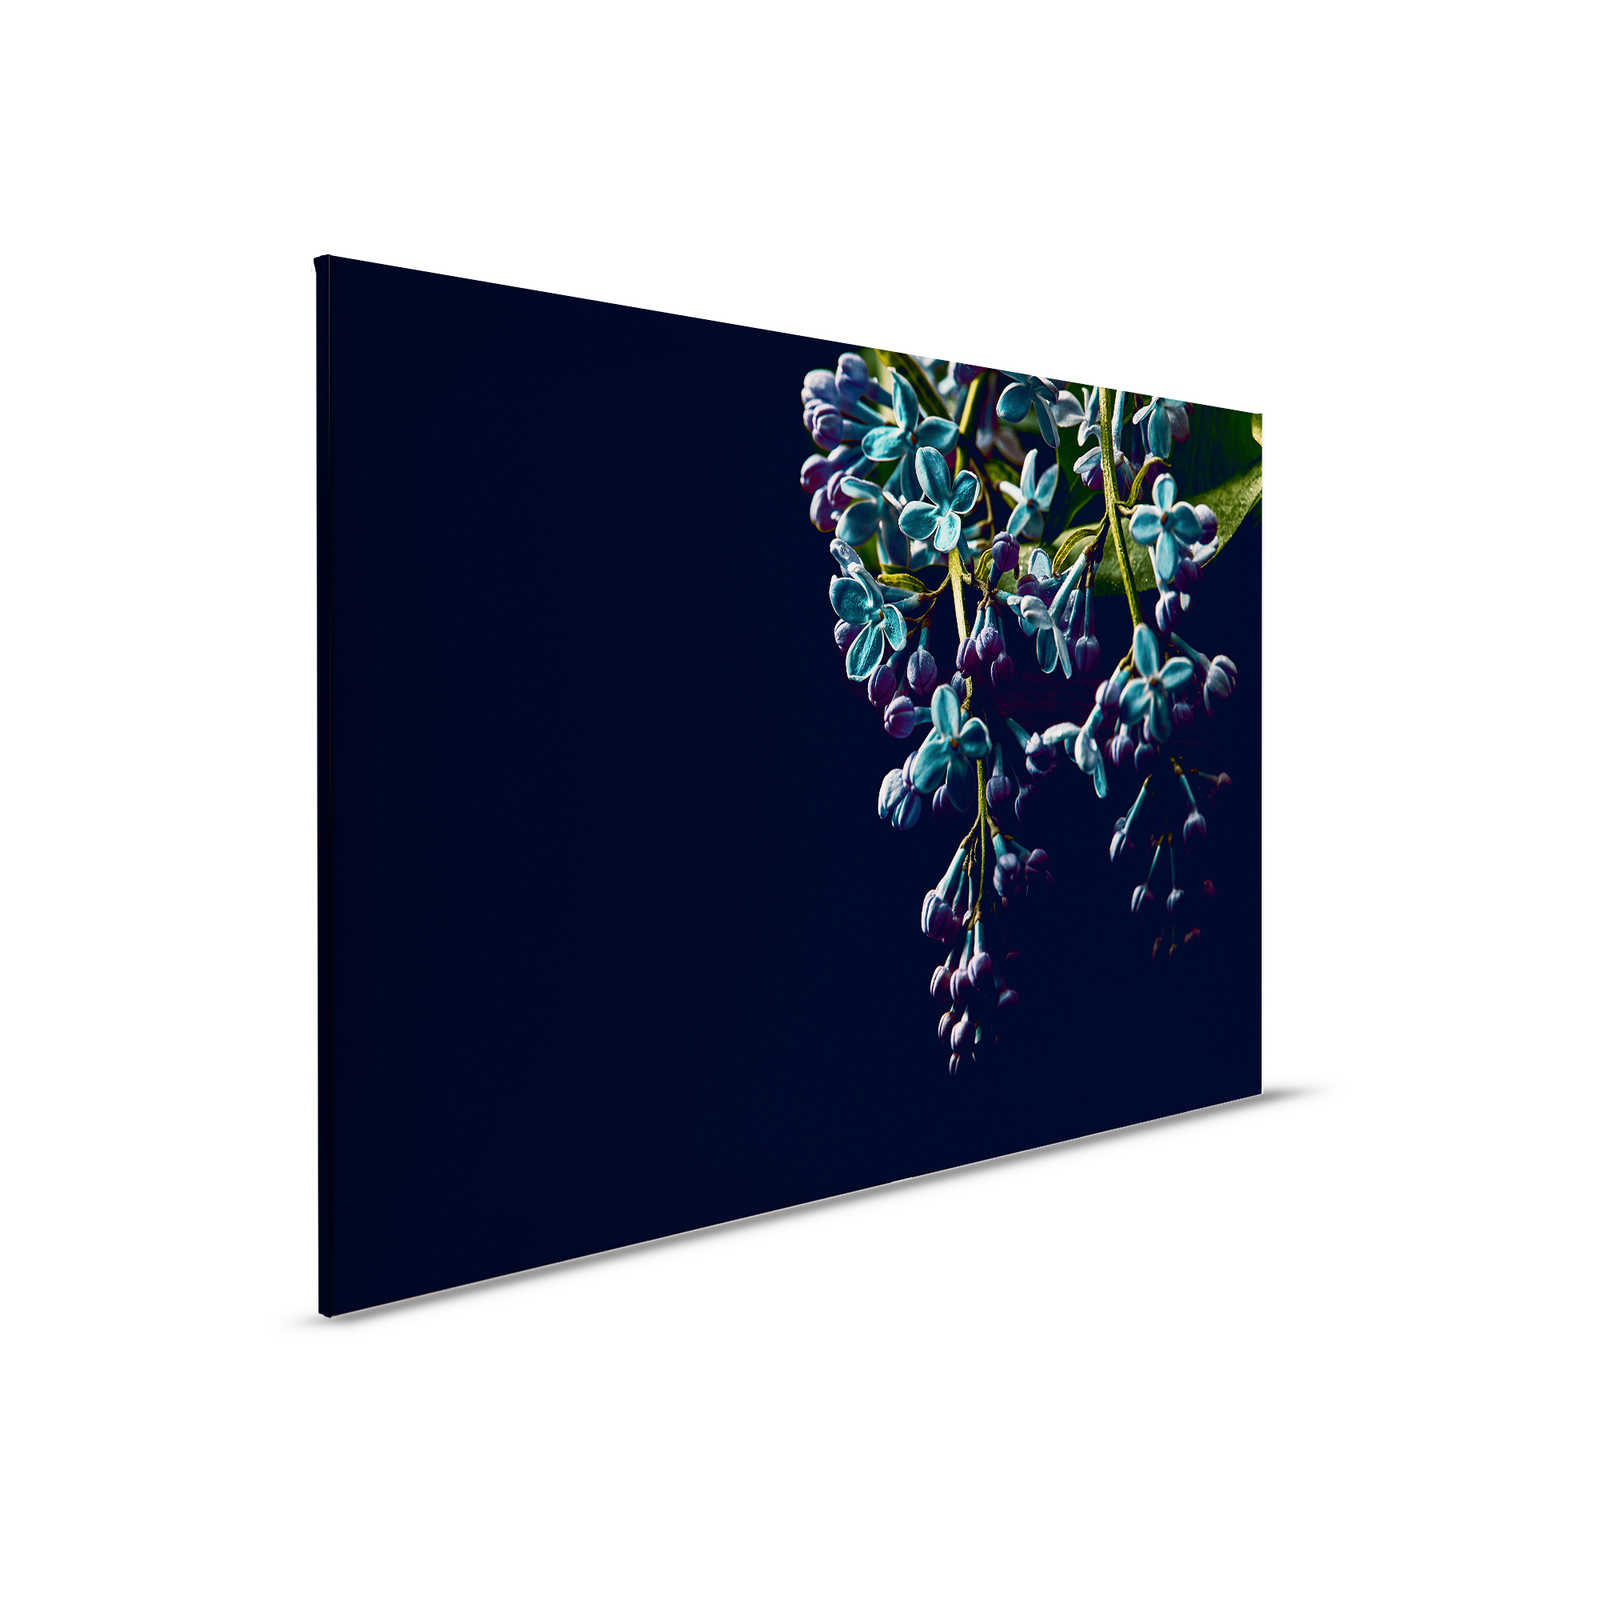         Leinwandbild Blumen auf schwarzen Hintergrund Close-Up – 0,90 m x 0,60 m
    